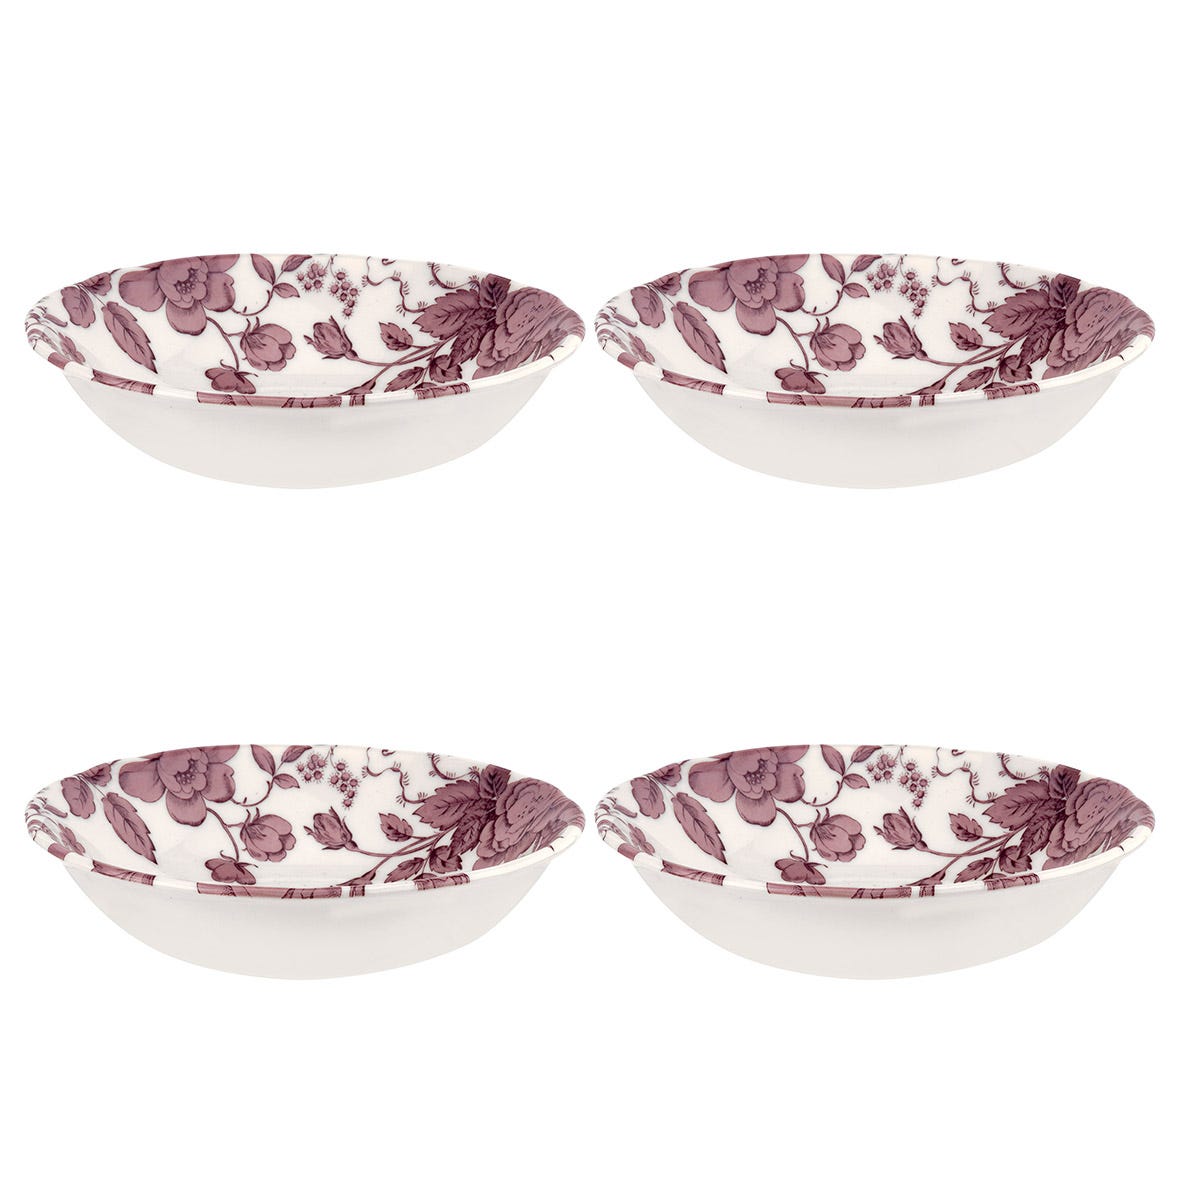 Kingsley Set of 4 Cereal Bowls, White